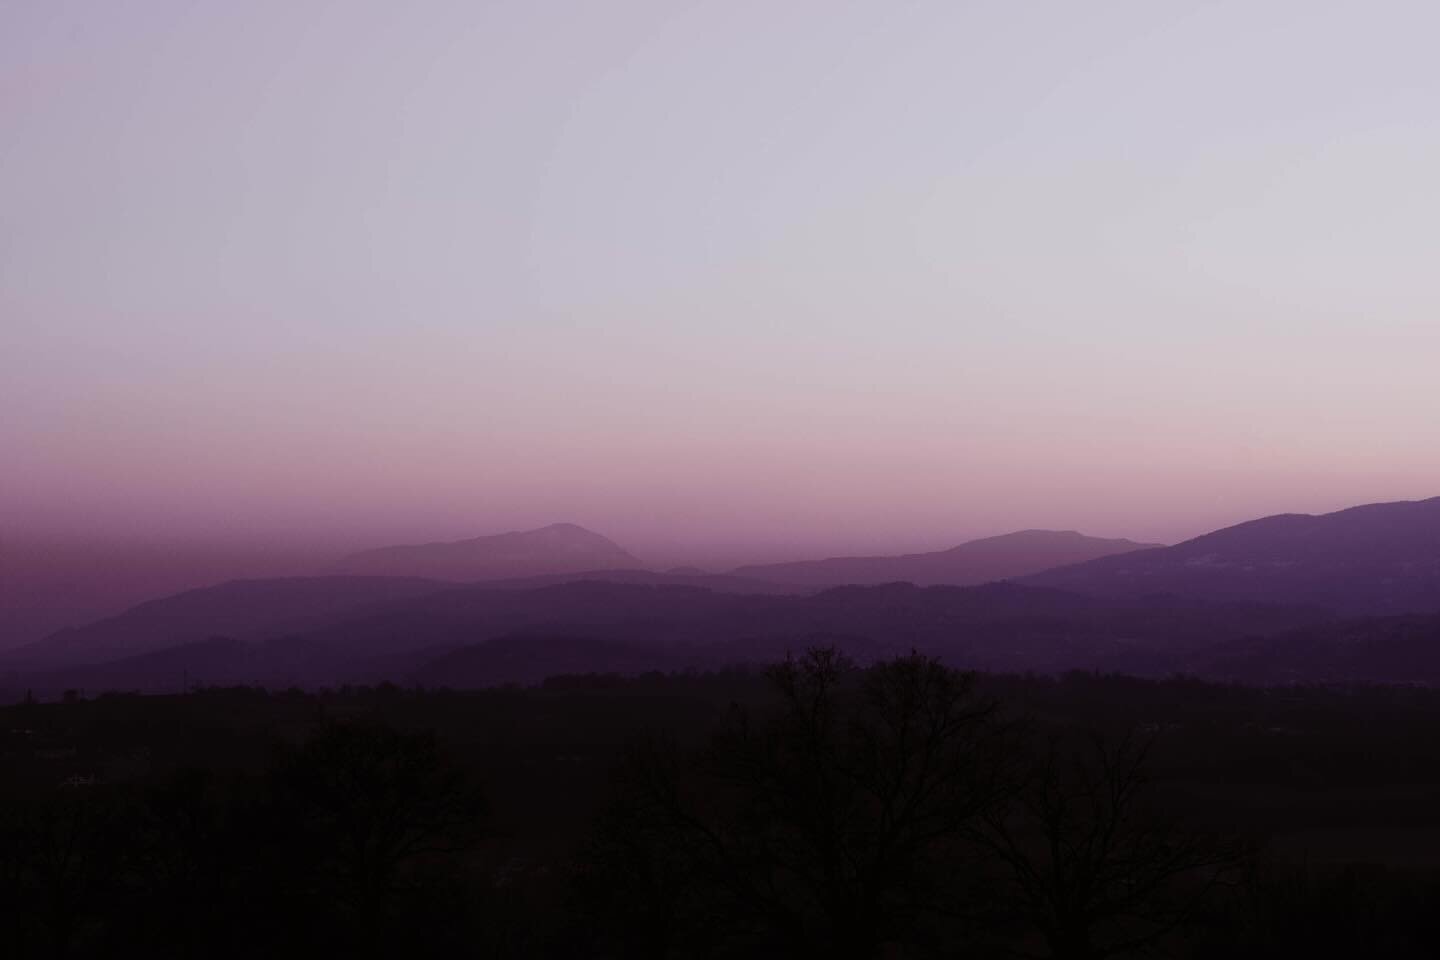 Purple twilight 💜
.
.
.
#mountains #mountainscape #mountainlovers #purpleshades #savoiemontblanc #hautesavoie #frenchalps #mountainsphotography #nikond750 #nikonphotography #studiopushpa #clairepushpa #frenchphotographer